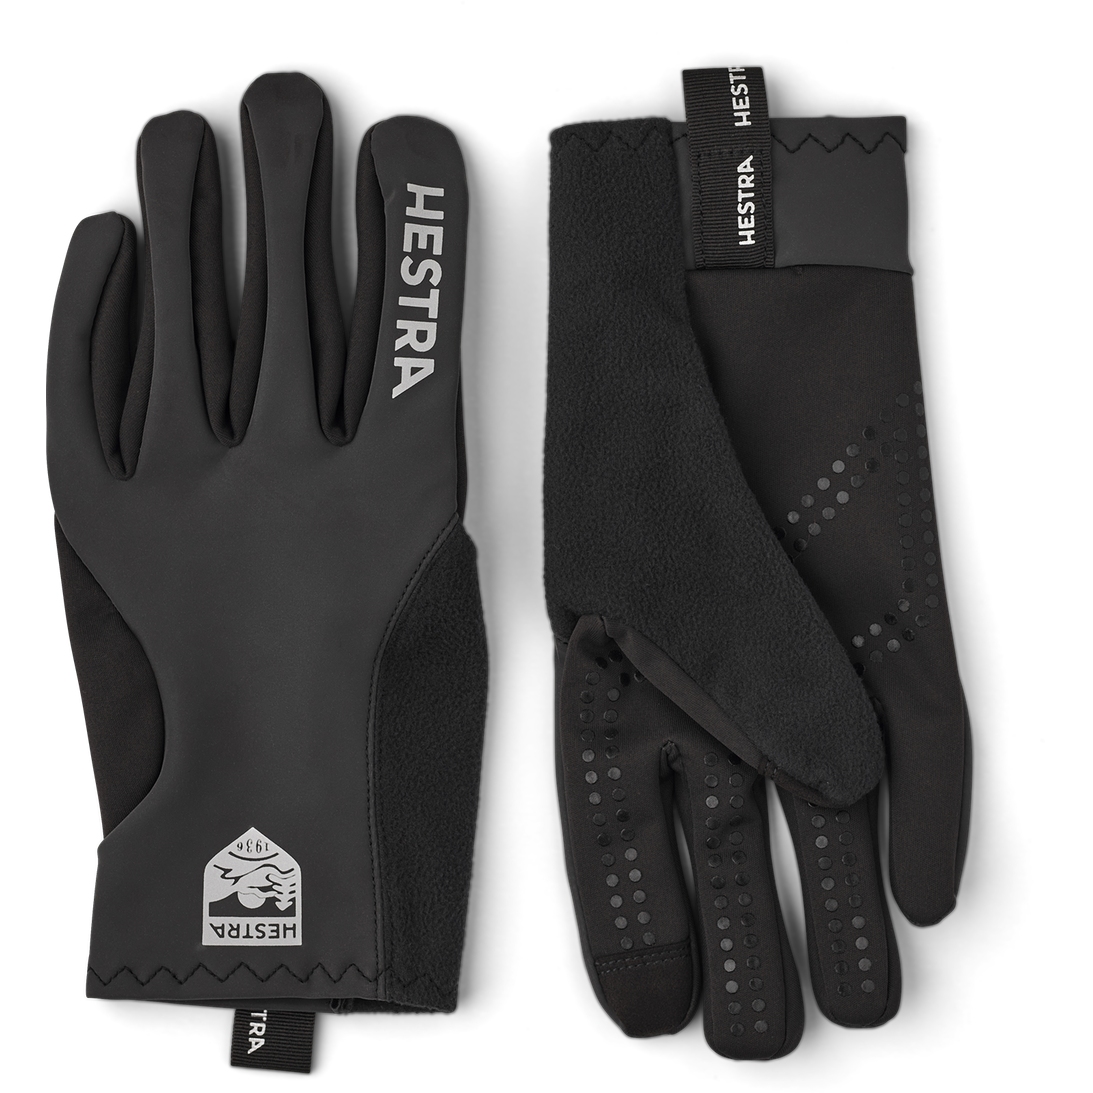 Produktbild von Hestra Runners All Weather - 5 Finger Laufhandschuhe - dark grey